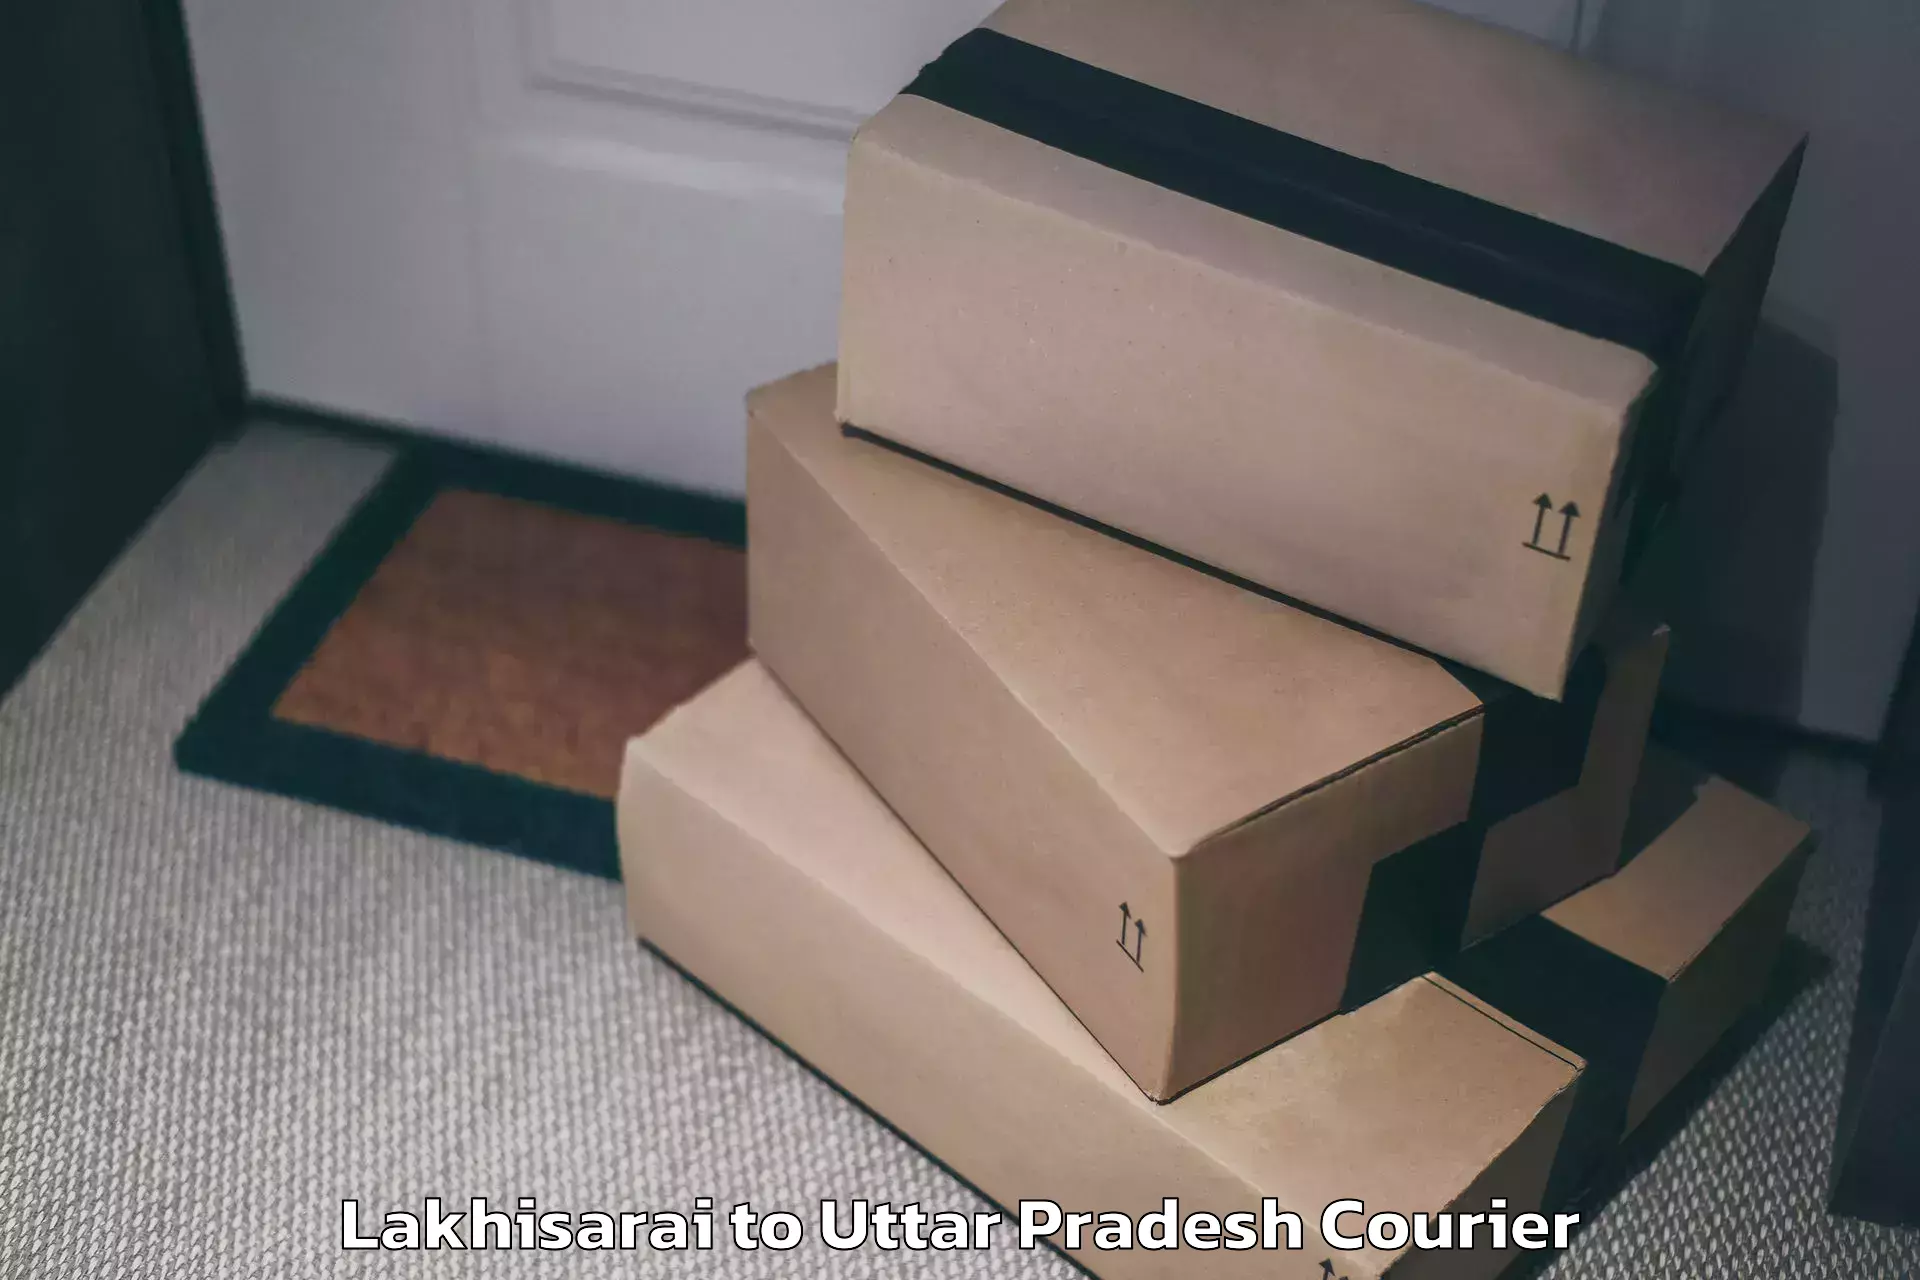 Efficient luggage delivery Lakhisarai to Uttar Pradesh